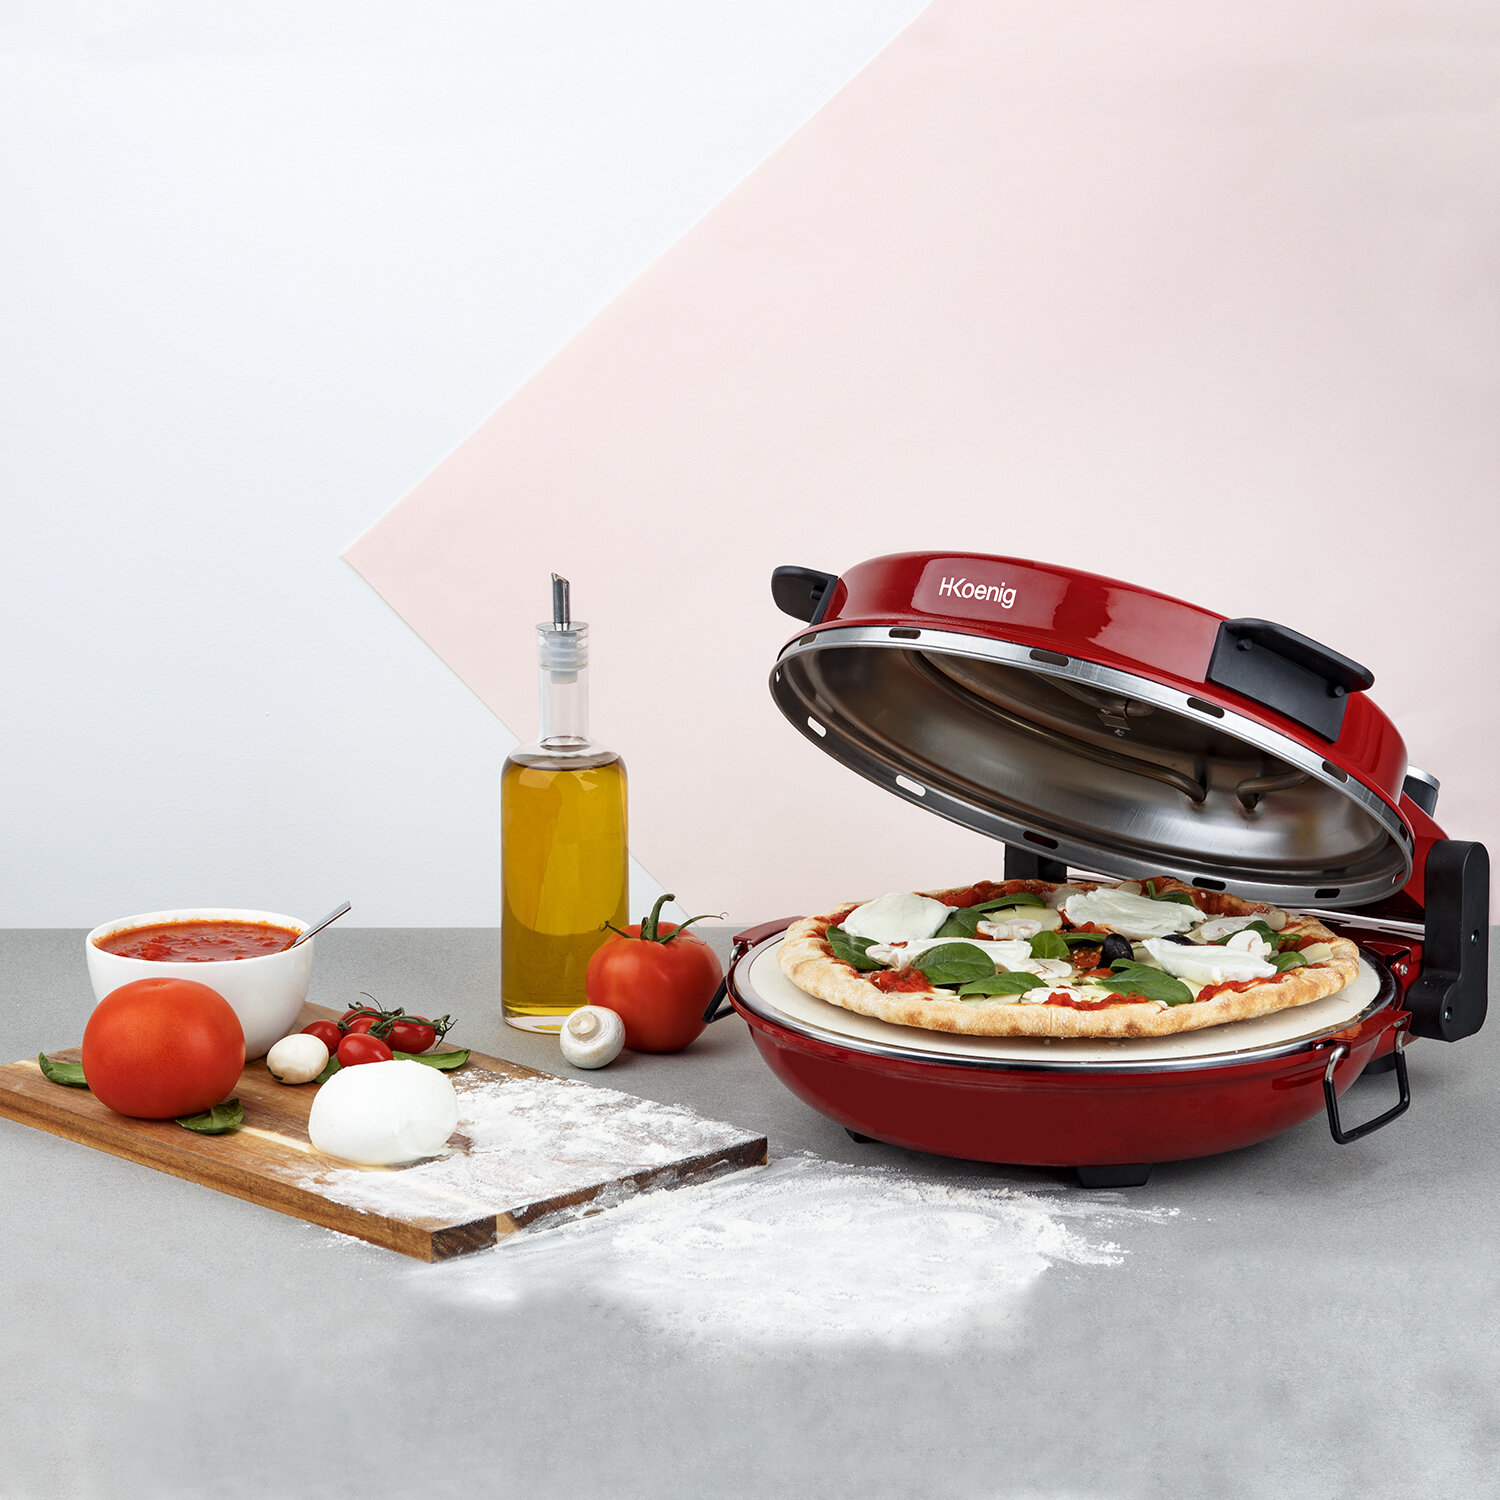 I nostri prodotti > cucina quotidiana > forno per pizza napoletana : Koenig  - IT